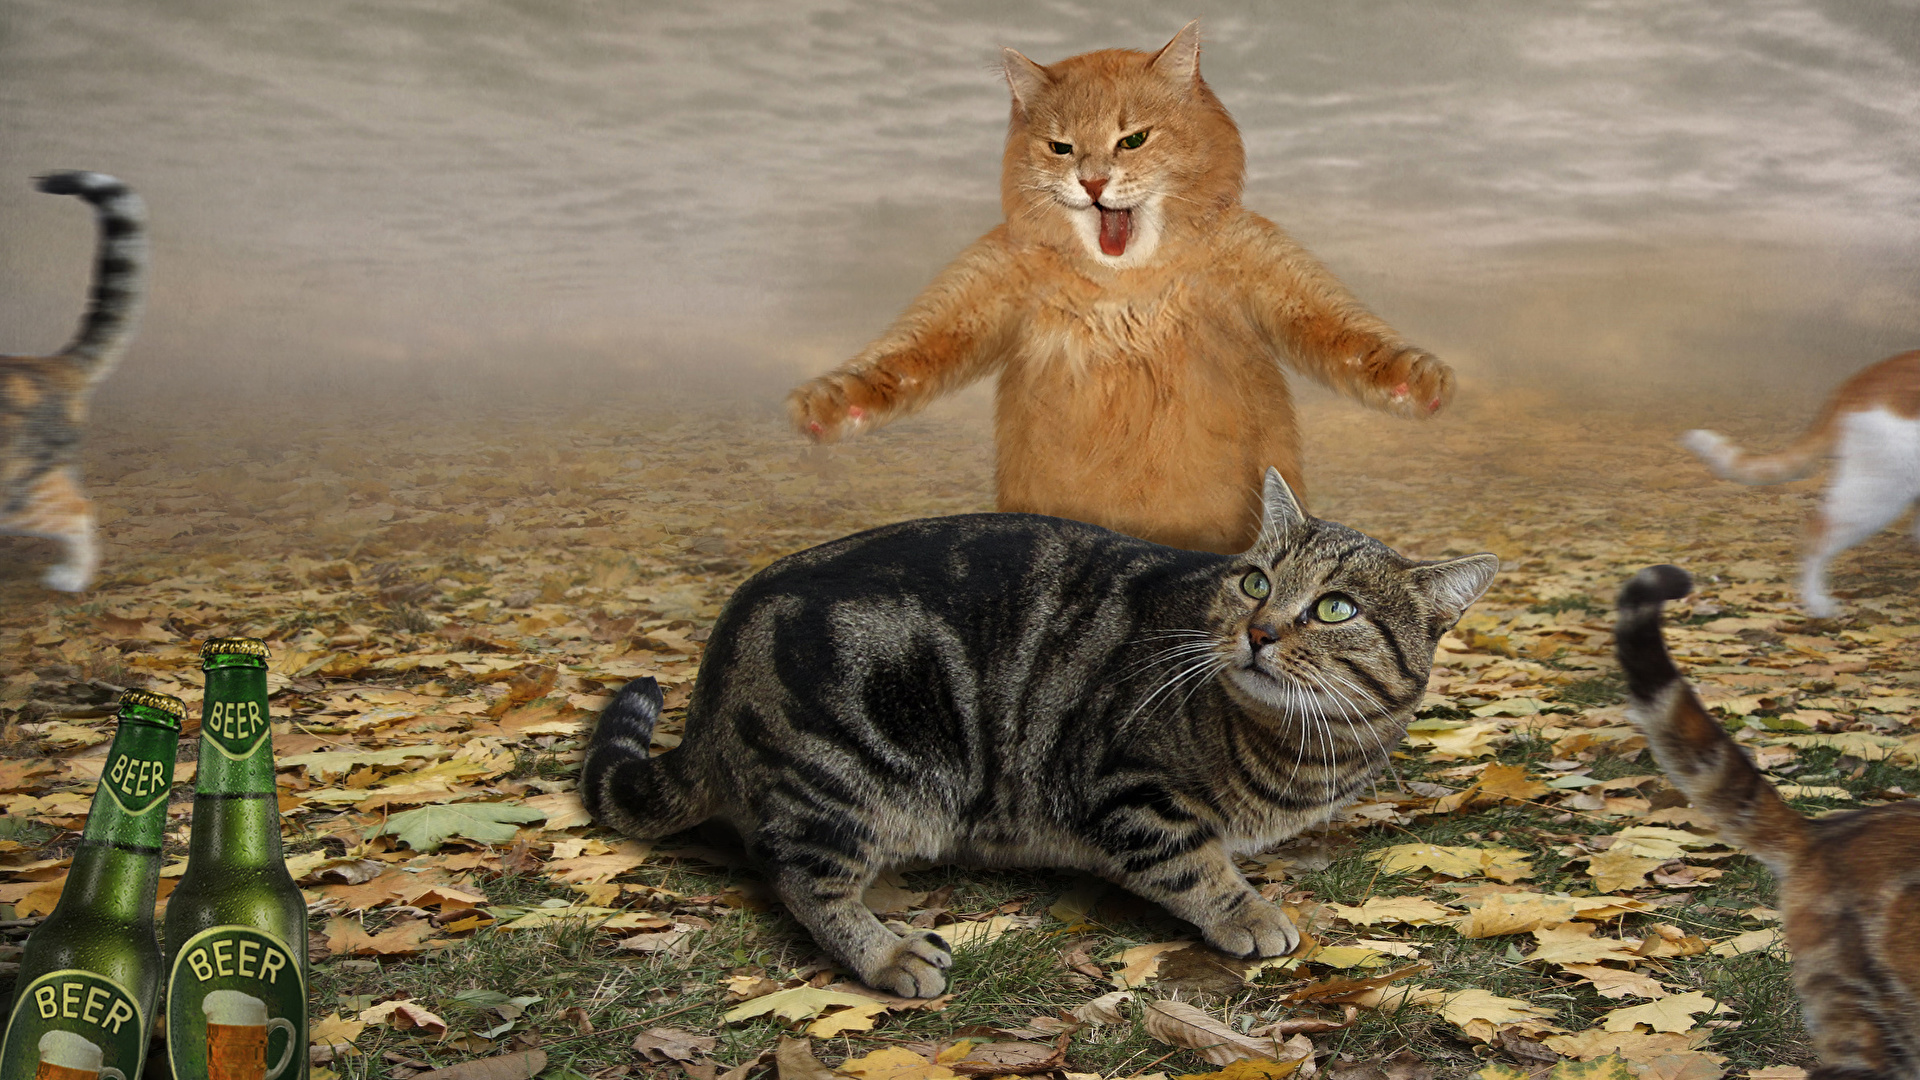 壁紙 19x1080 飼い猫 恐怖 叫ぶ おもしろい 動物 ダウンロード 写真